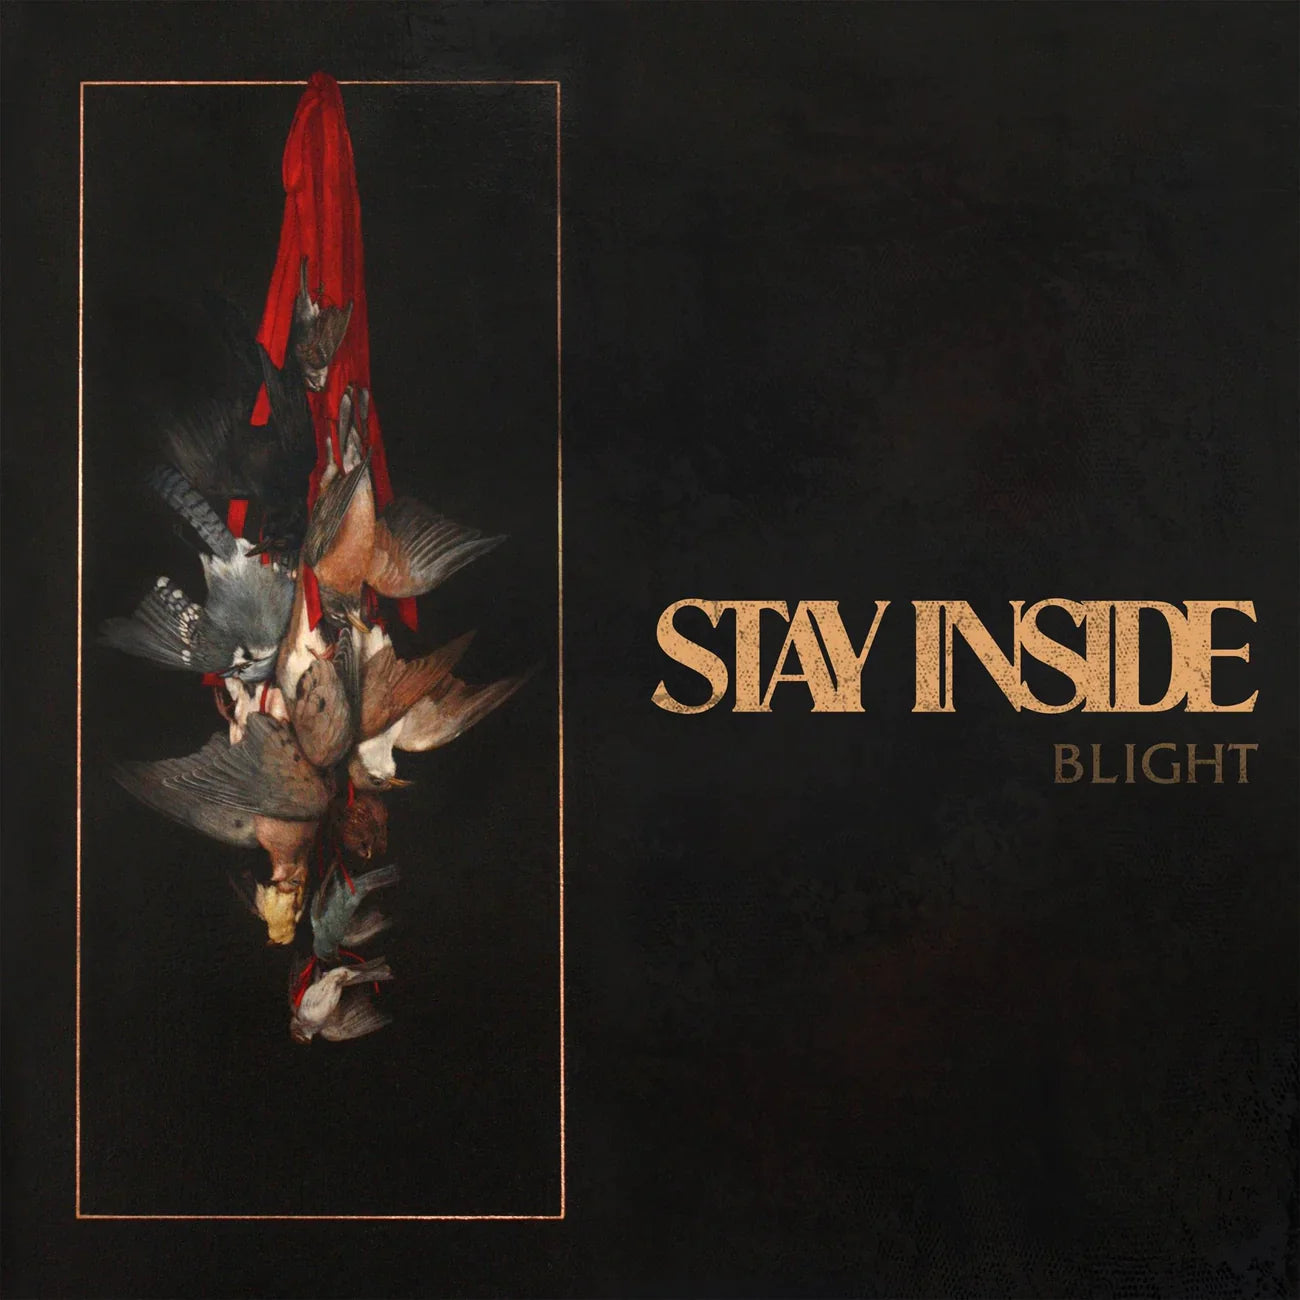 Stay Inside "Blight" CS